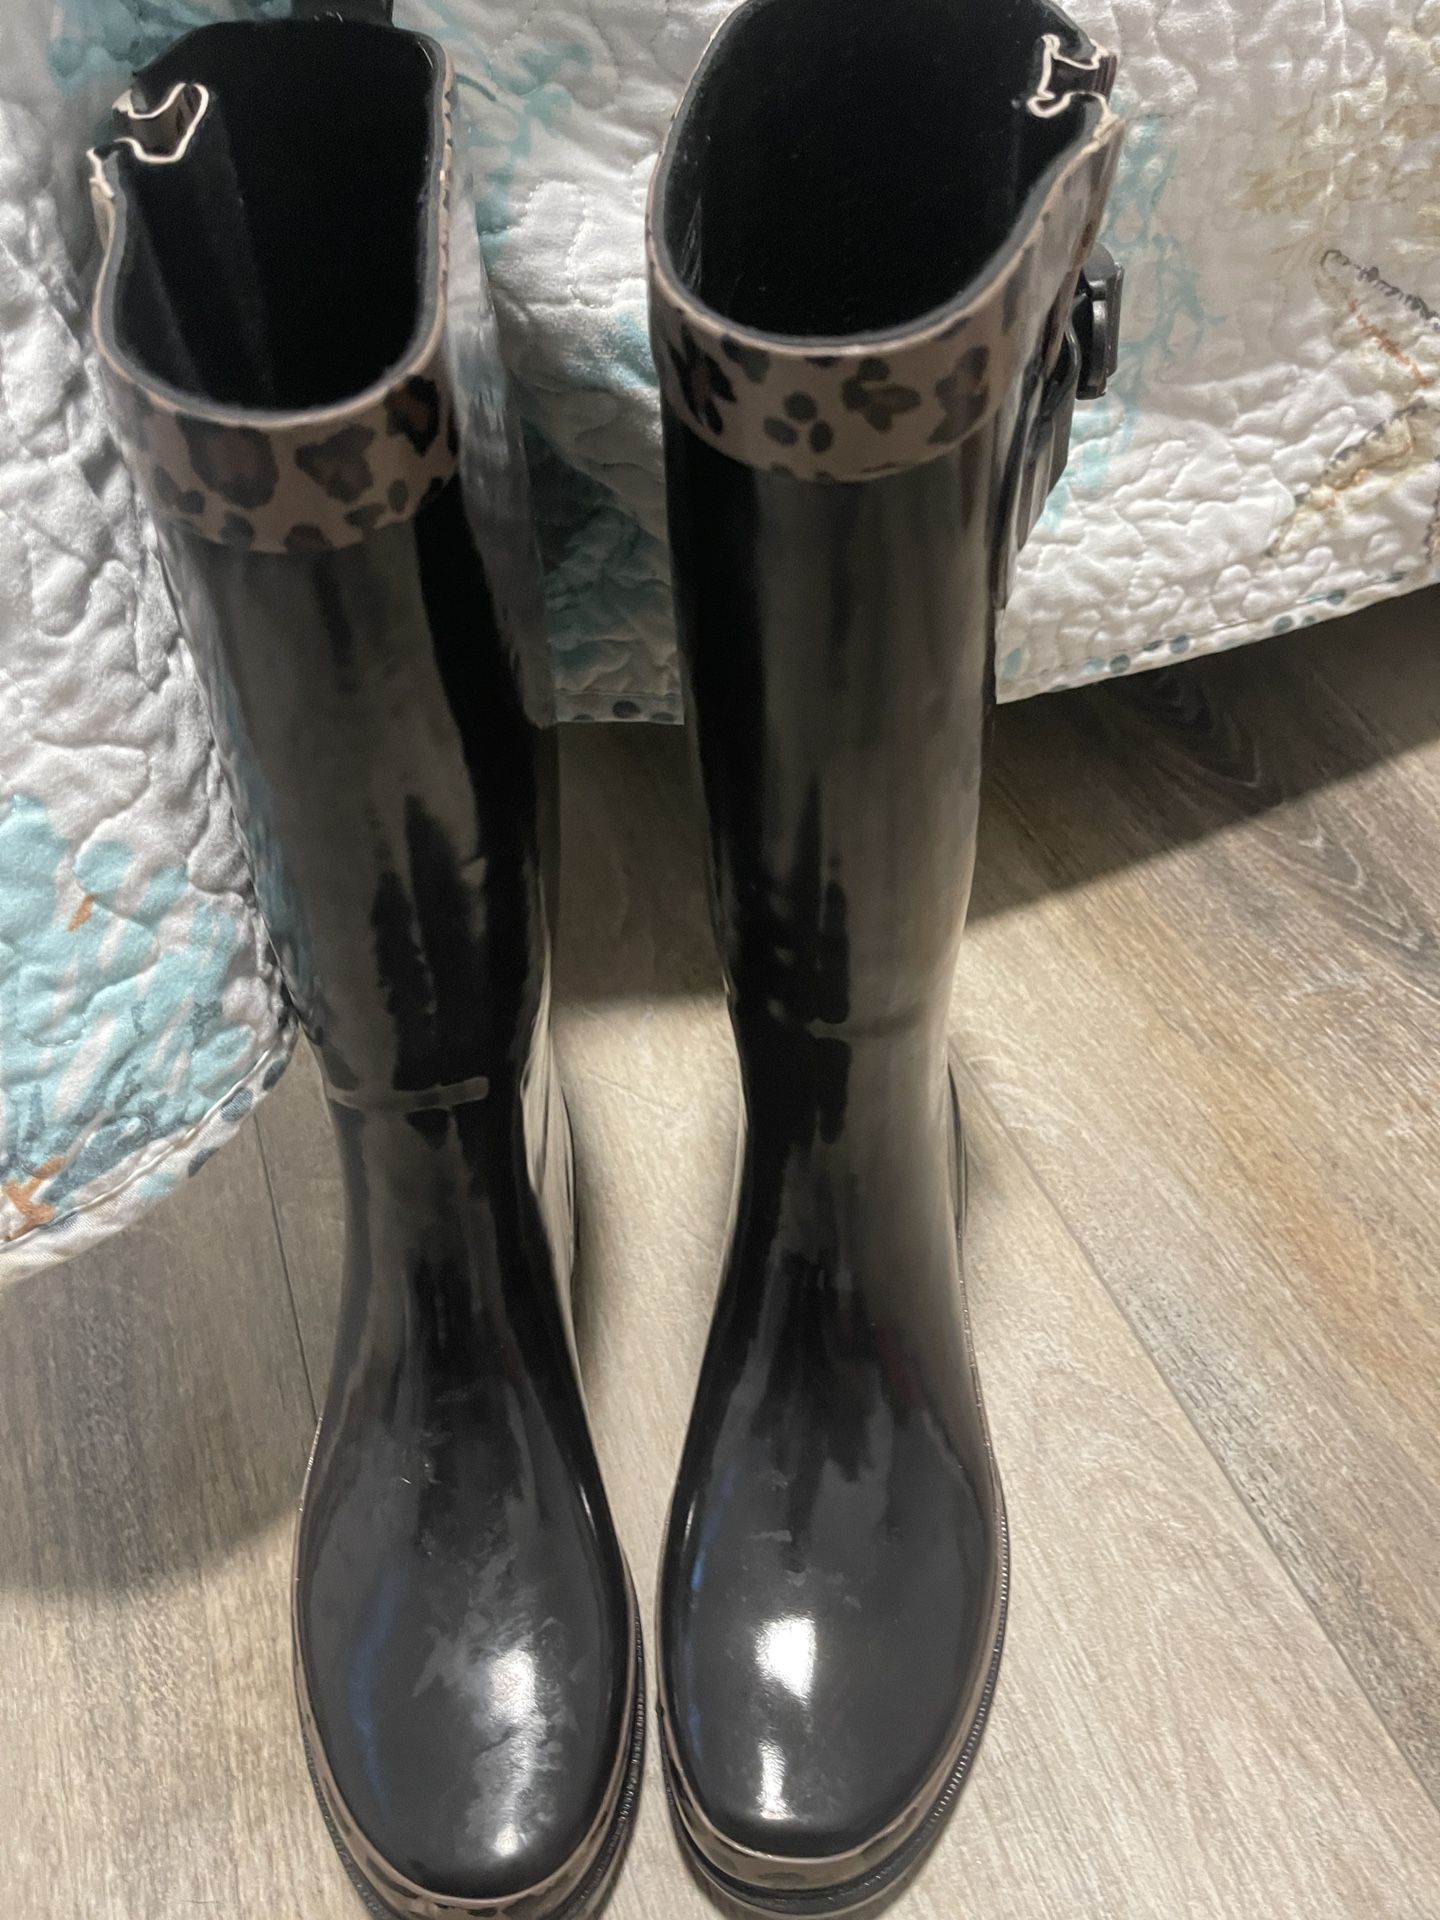 Capelli Rain boots 